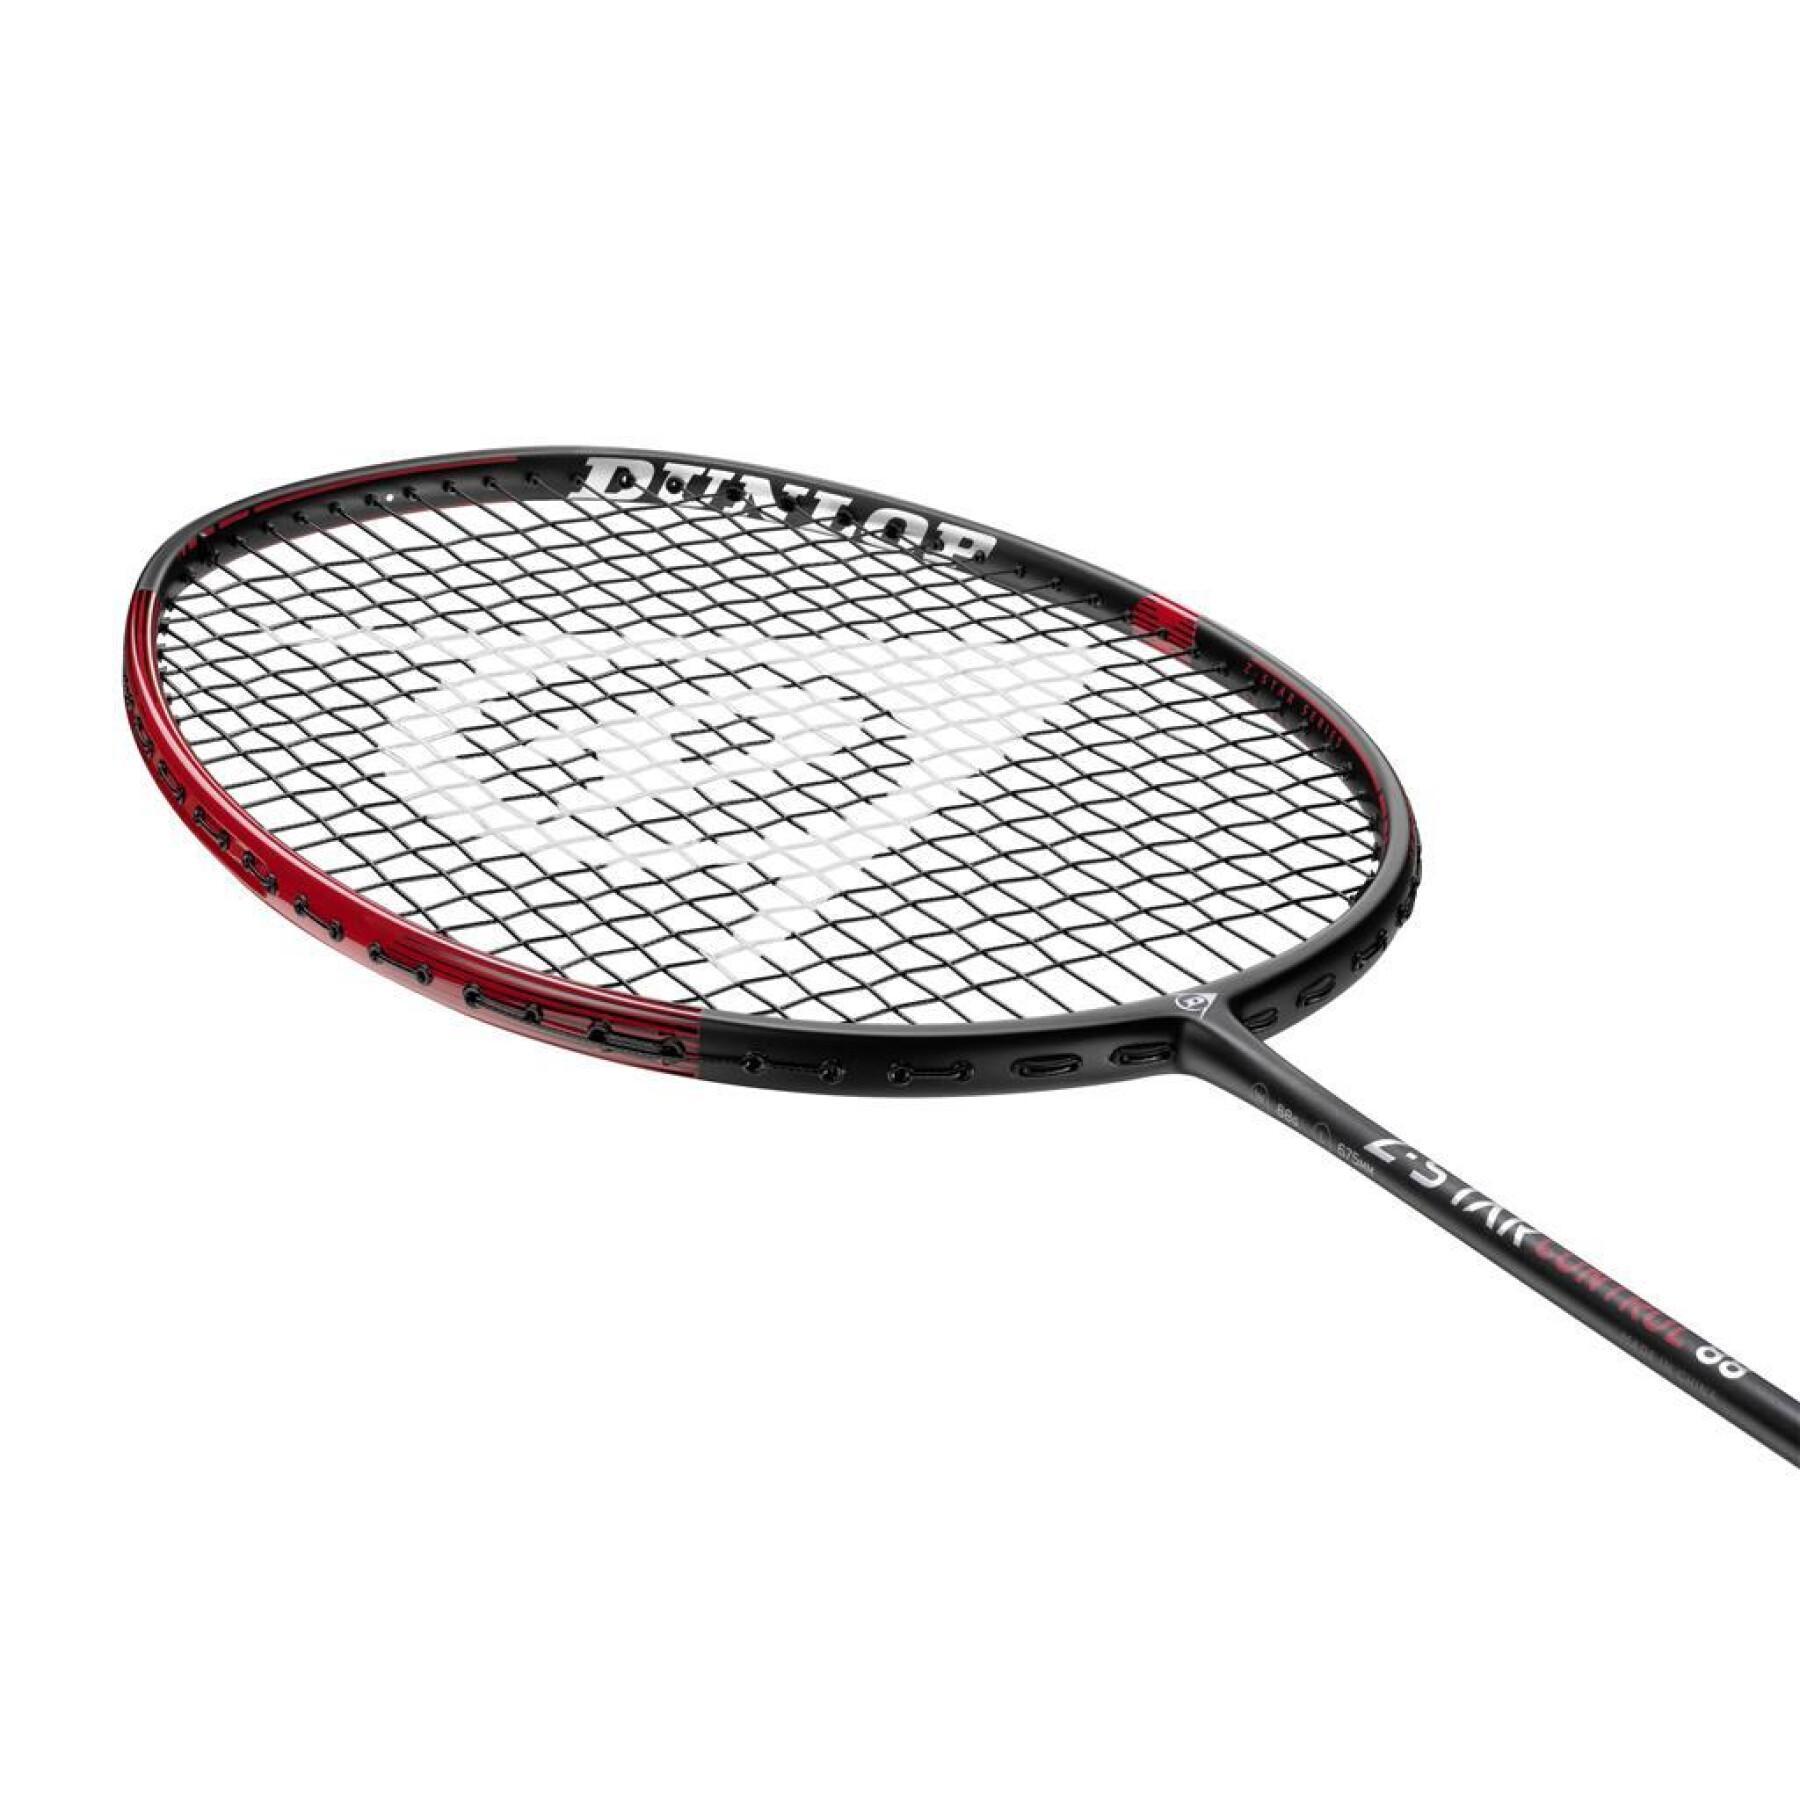 Raquette de badminton Dunlop Z-Star Control 88